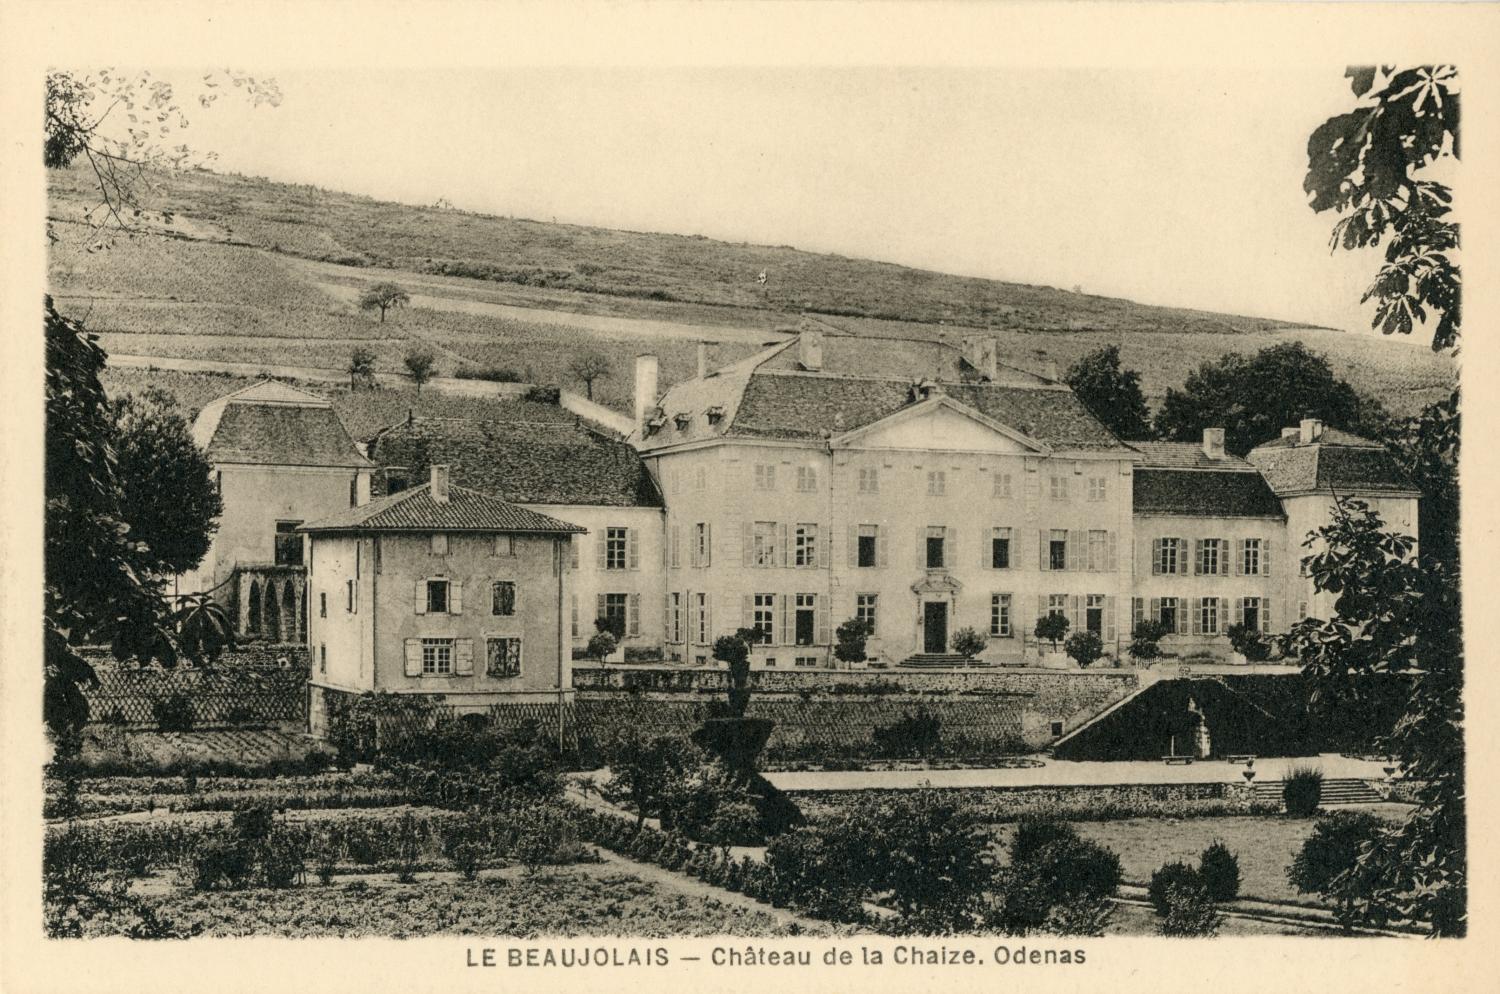 Le Beaujolais. - Château de la Chaize. Odenas